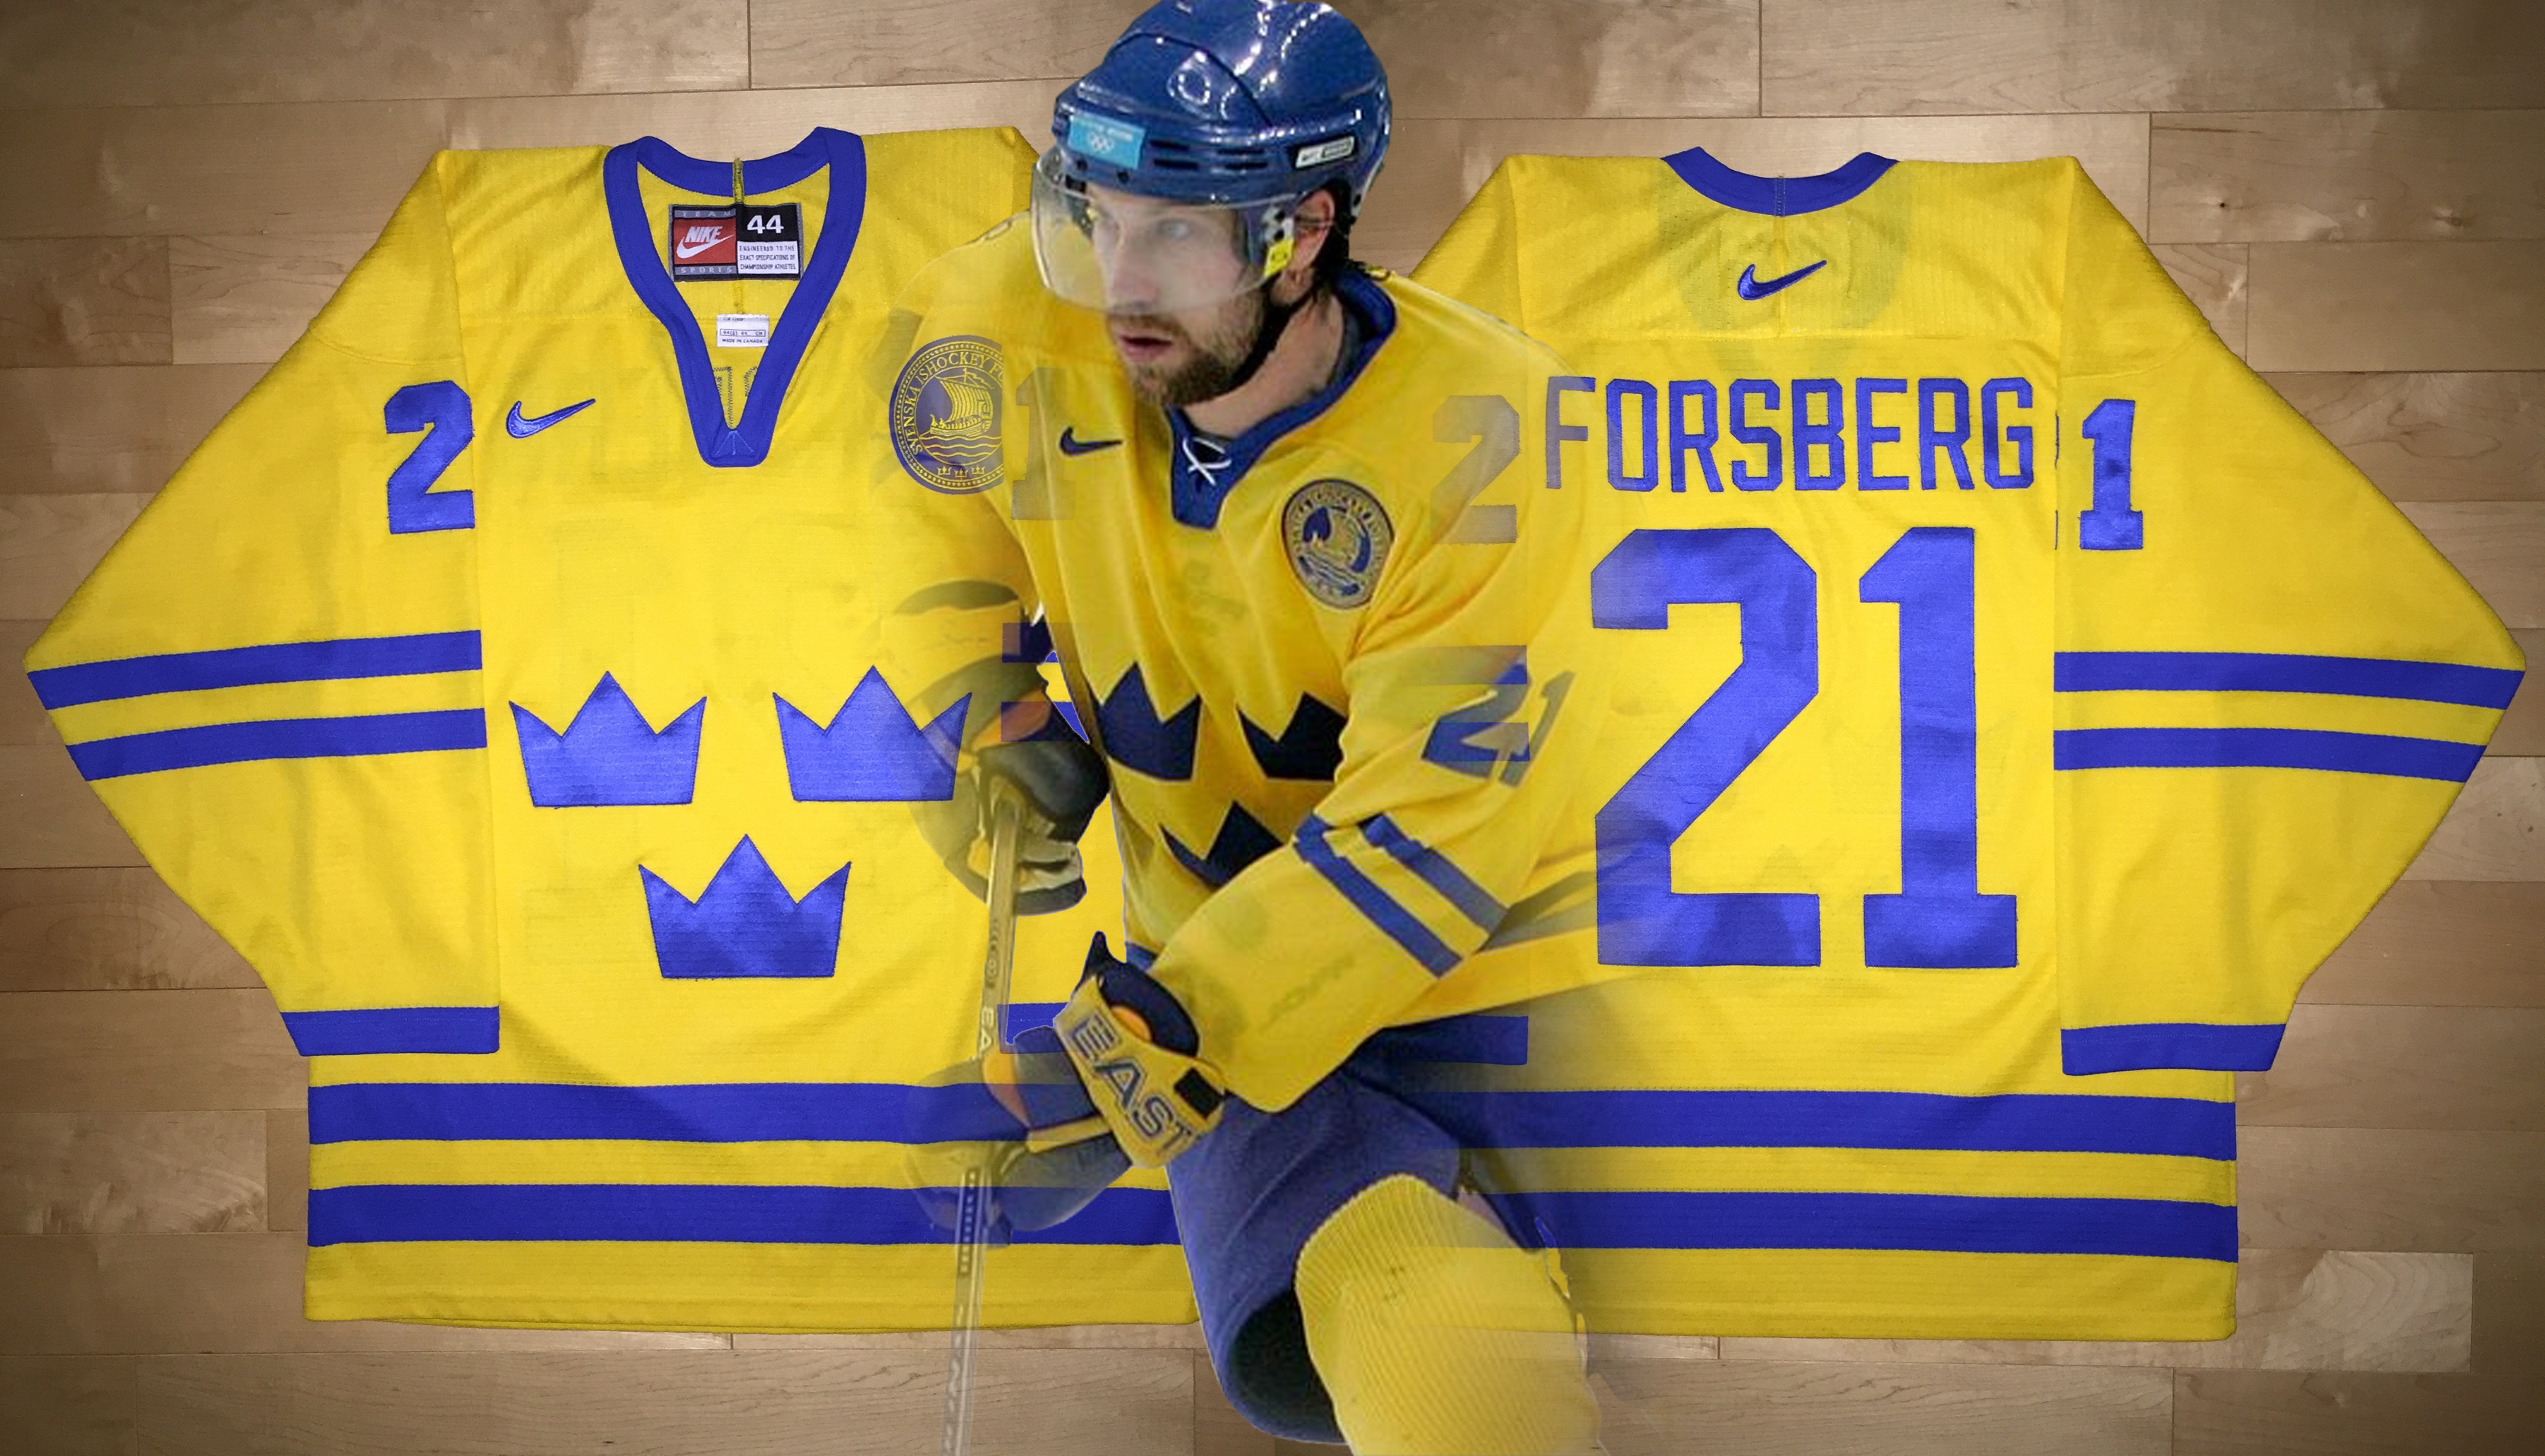 Olympics Team Sweden – Peter Forsberg 